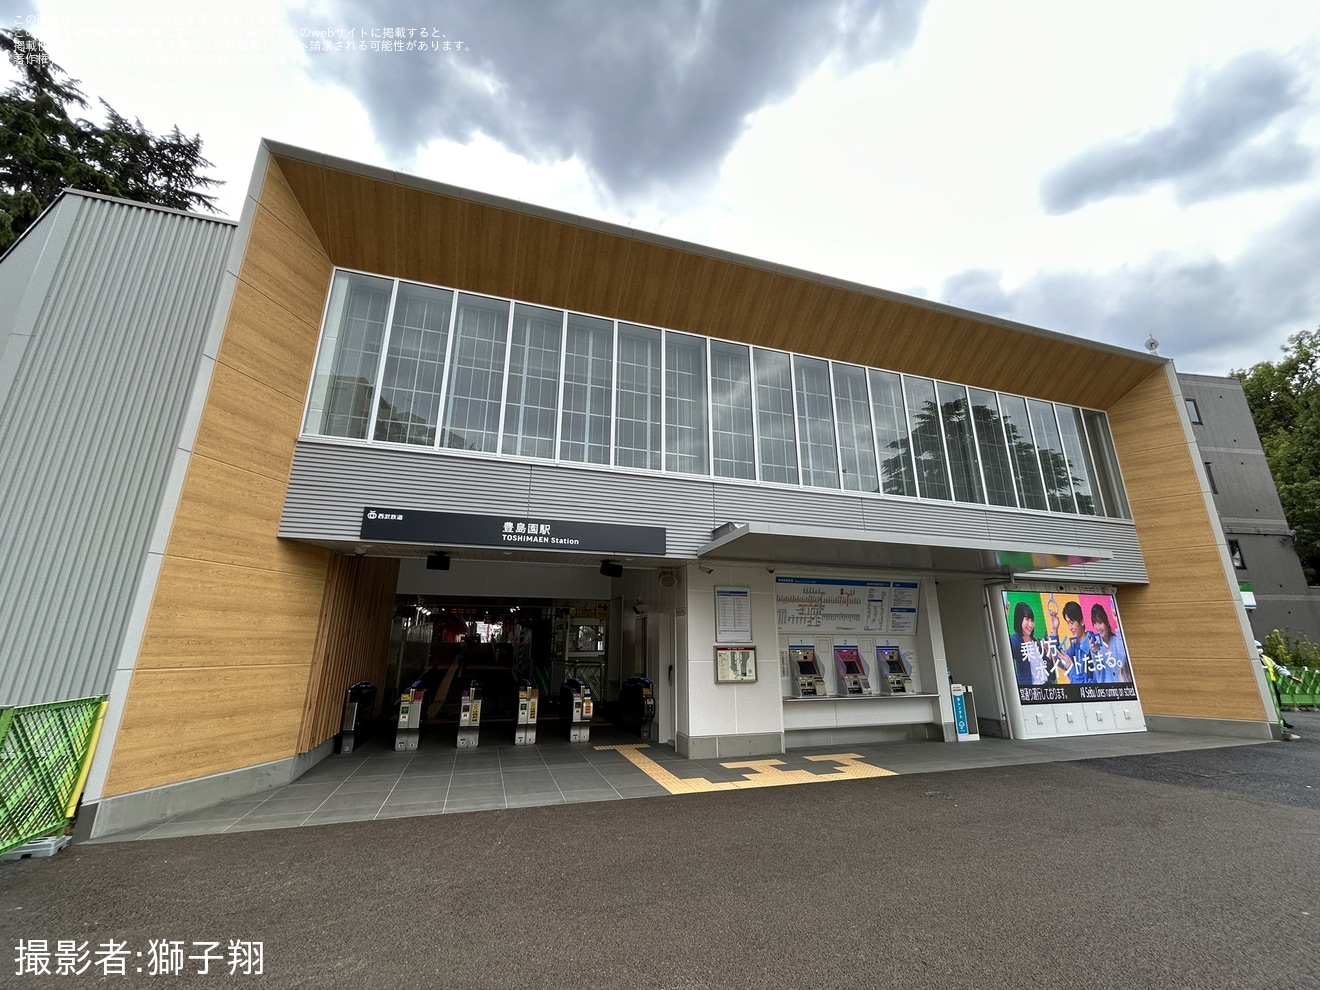 【西武】豊島園駅新駅舎が使用開始の拡大写真